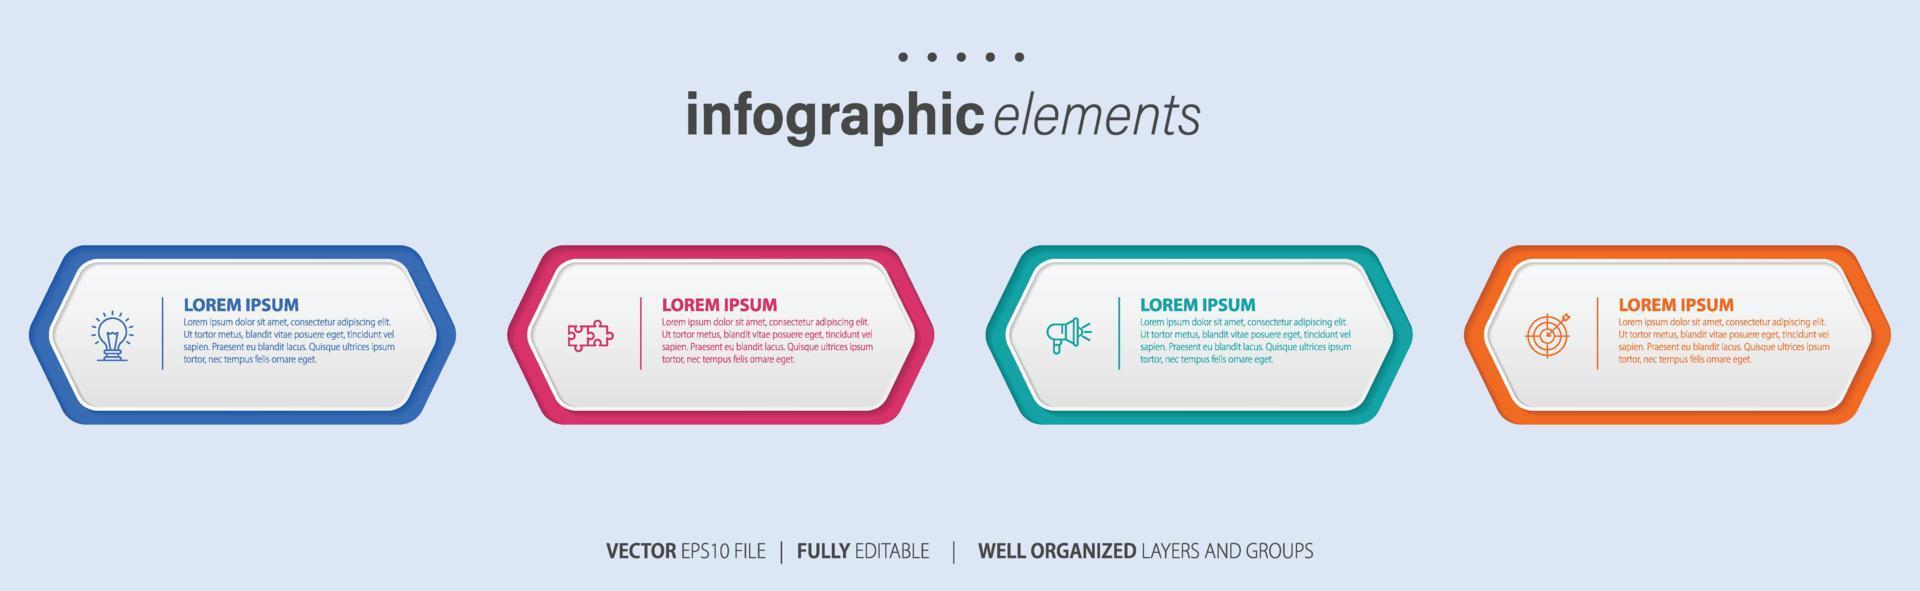 infographic elementen gegevens visualisatie vector